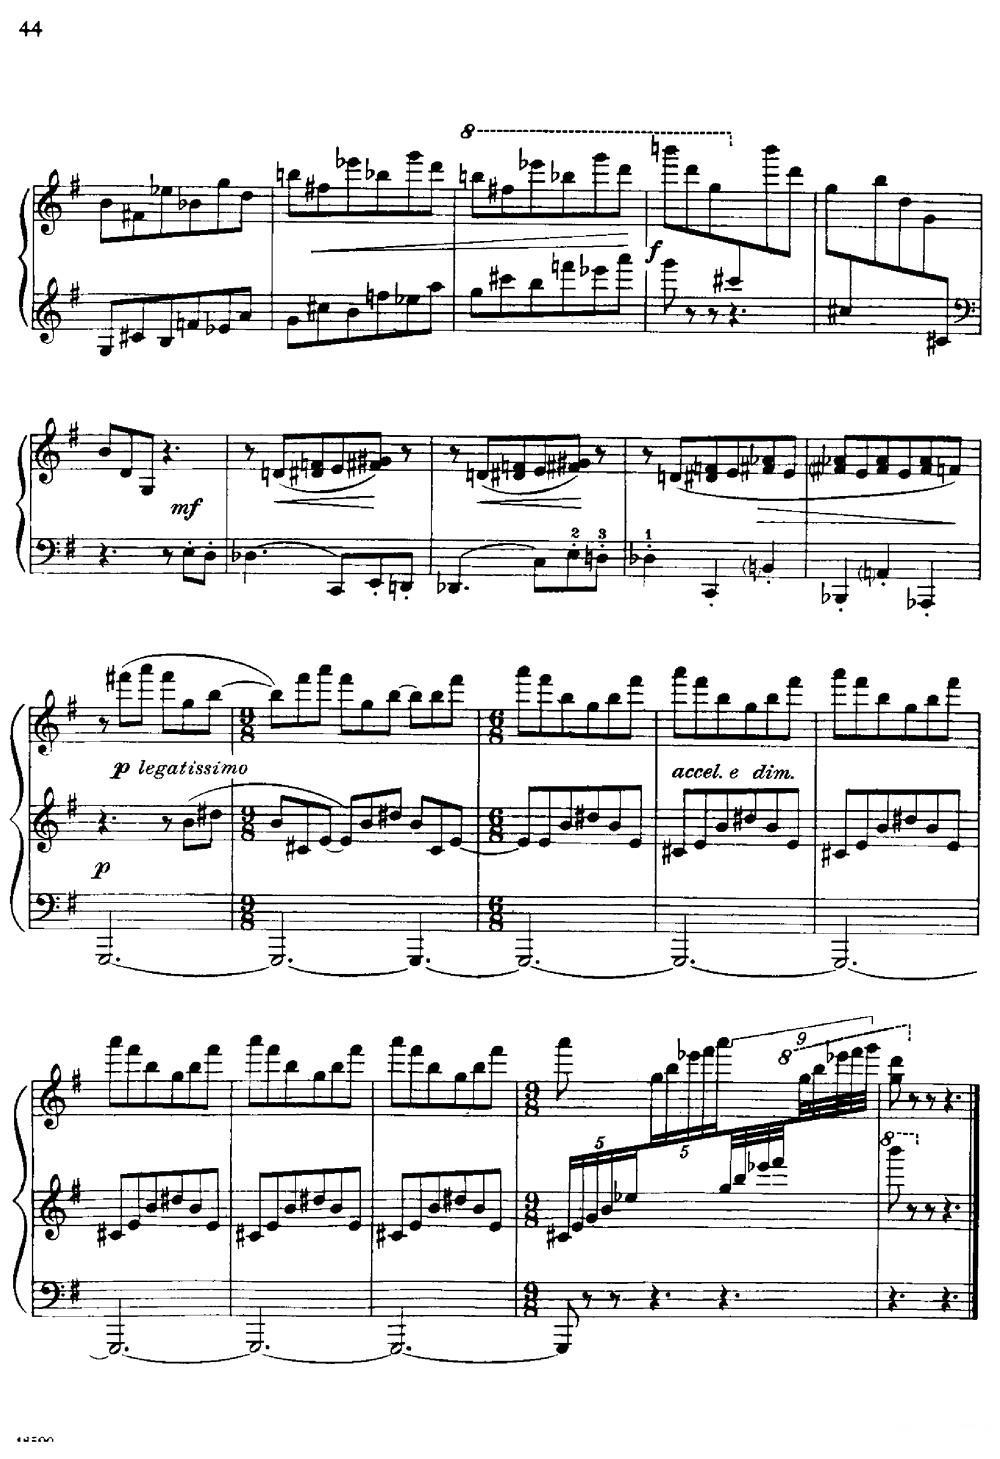 塞缪尔·巴伯 - 降e小调钢琴奏鸣曲 op.26 v.2(1).jpg